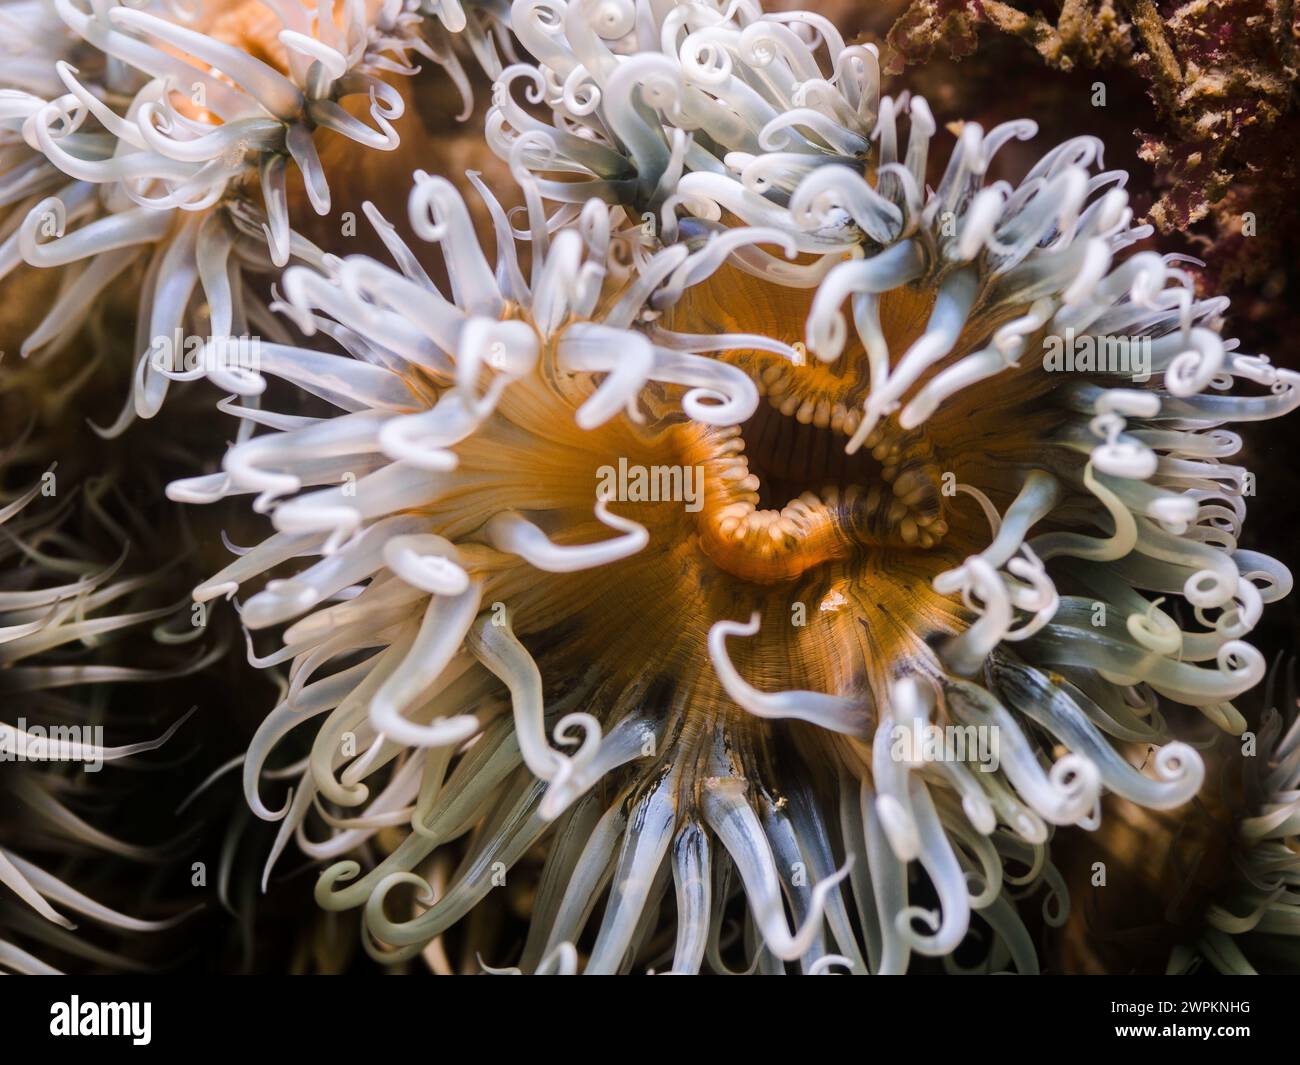 Primo piano di un anemone a strisce sott'acqua con corpo giallo chiaro e tentacoli bianchi Foto Stock